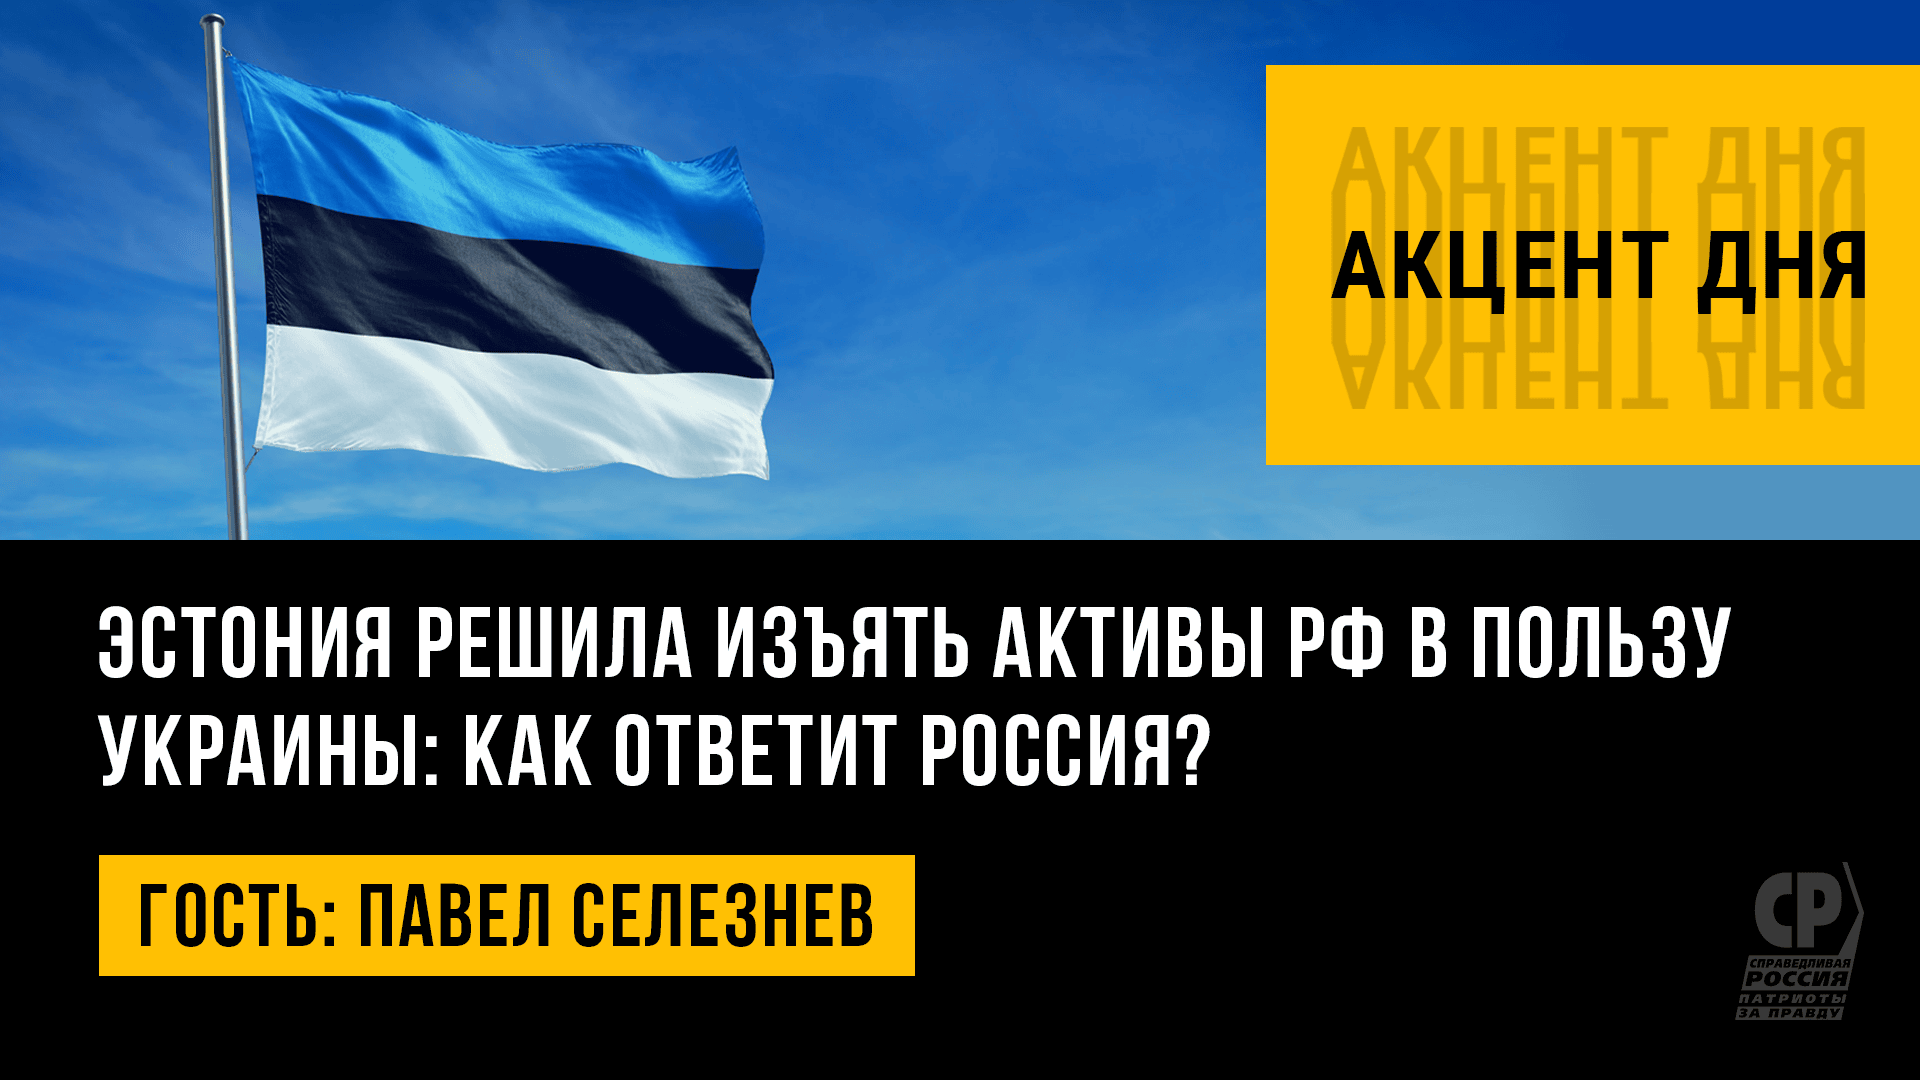 Эстония решила изъять активы РФ в пользу Украины: как ответит Россия? Павел Селезнев